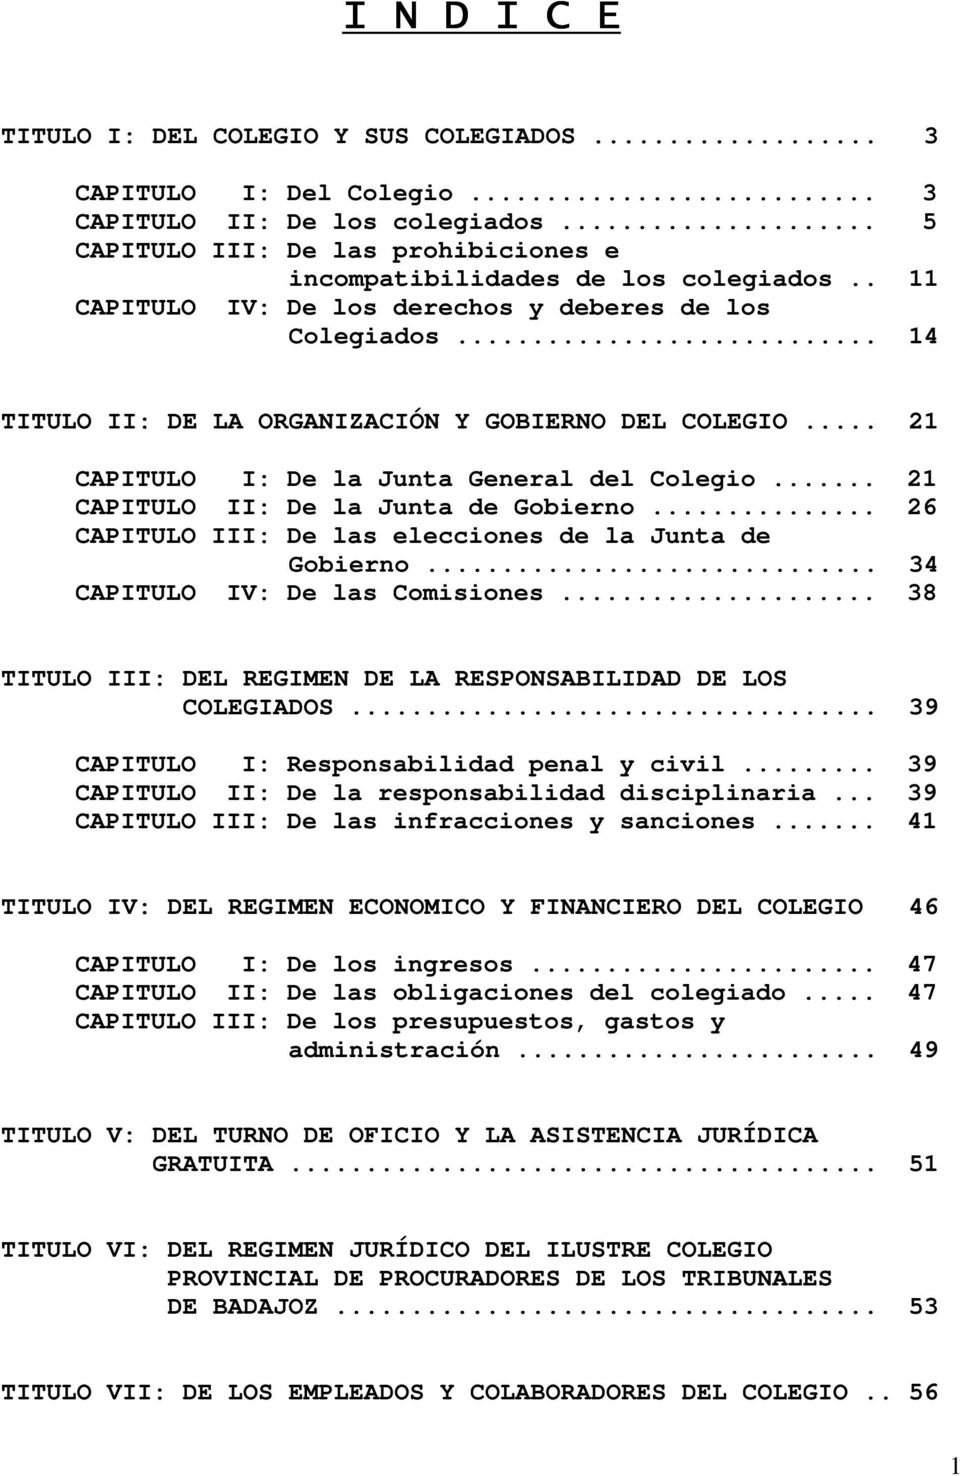 .. 21 CAPITULO II: De la Junta de Gobierno... 26 CAPITULO III: De las elecciones de la Junta de Gobierno... 34 CAPITULO IV: De las Comisiones.